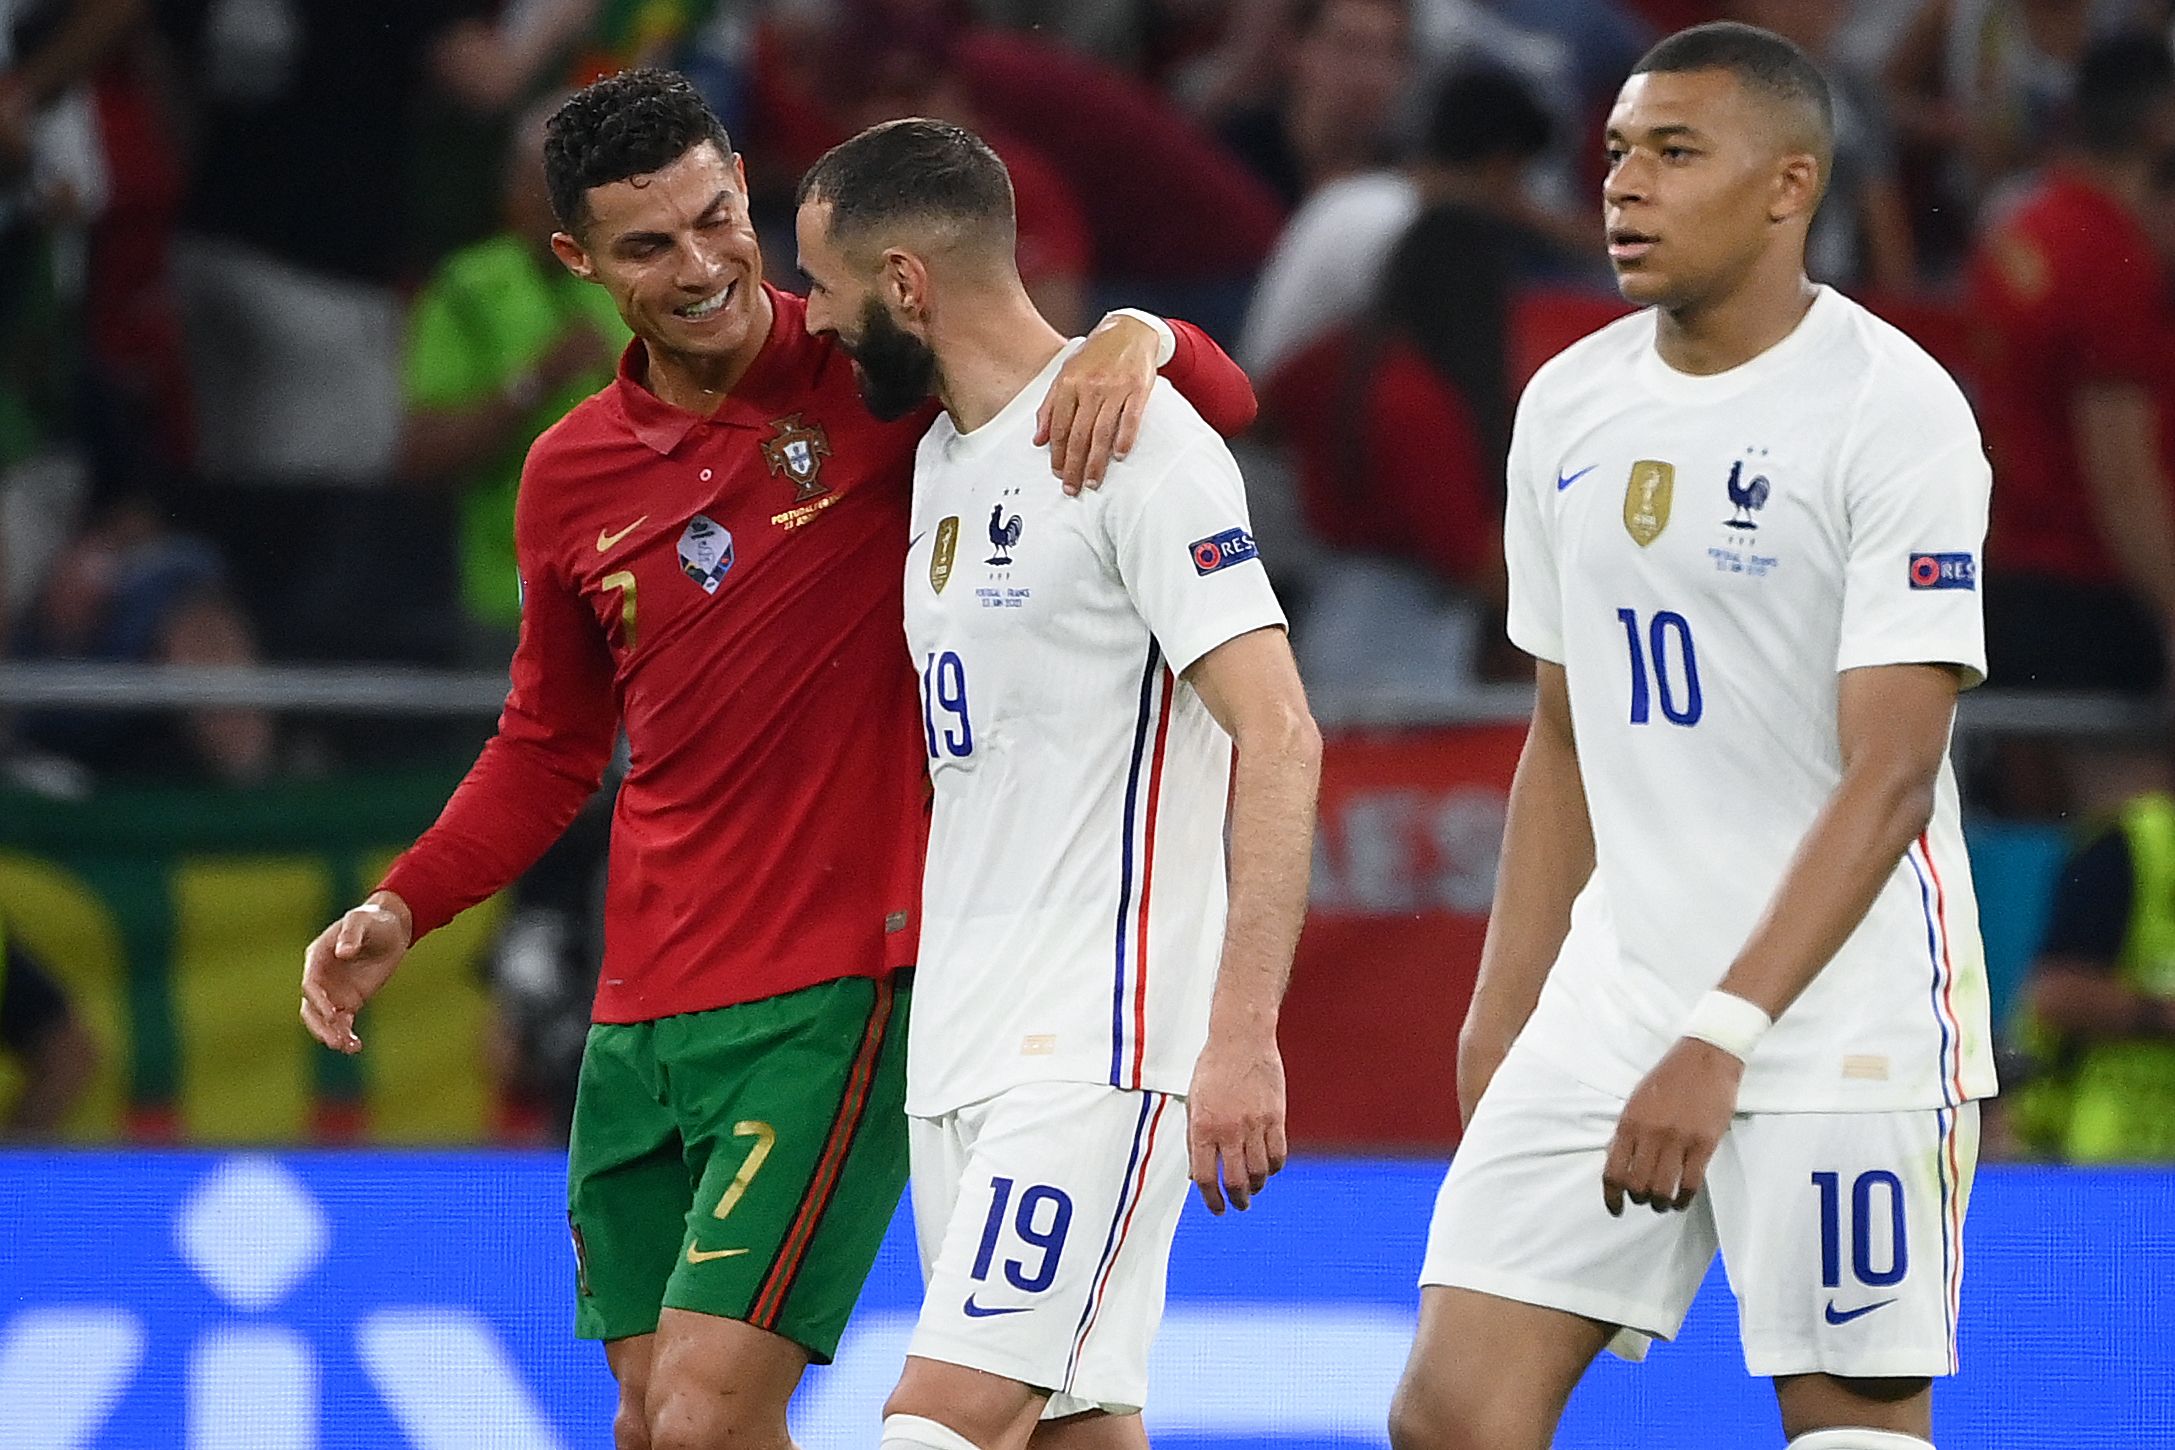 El delantero portugués, Cristiano Ronaldo, y el francés Karim Benzema caminan abrazados al terminar el primero tiempo del partido que empataron 2-2 este miércoles 23 de junio. Foto Prensa Libre: AFP.